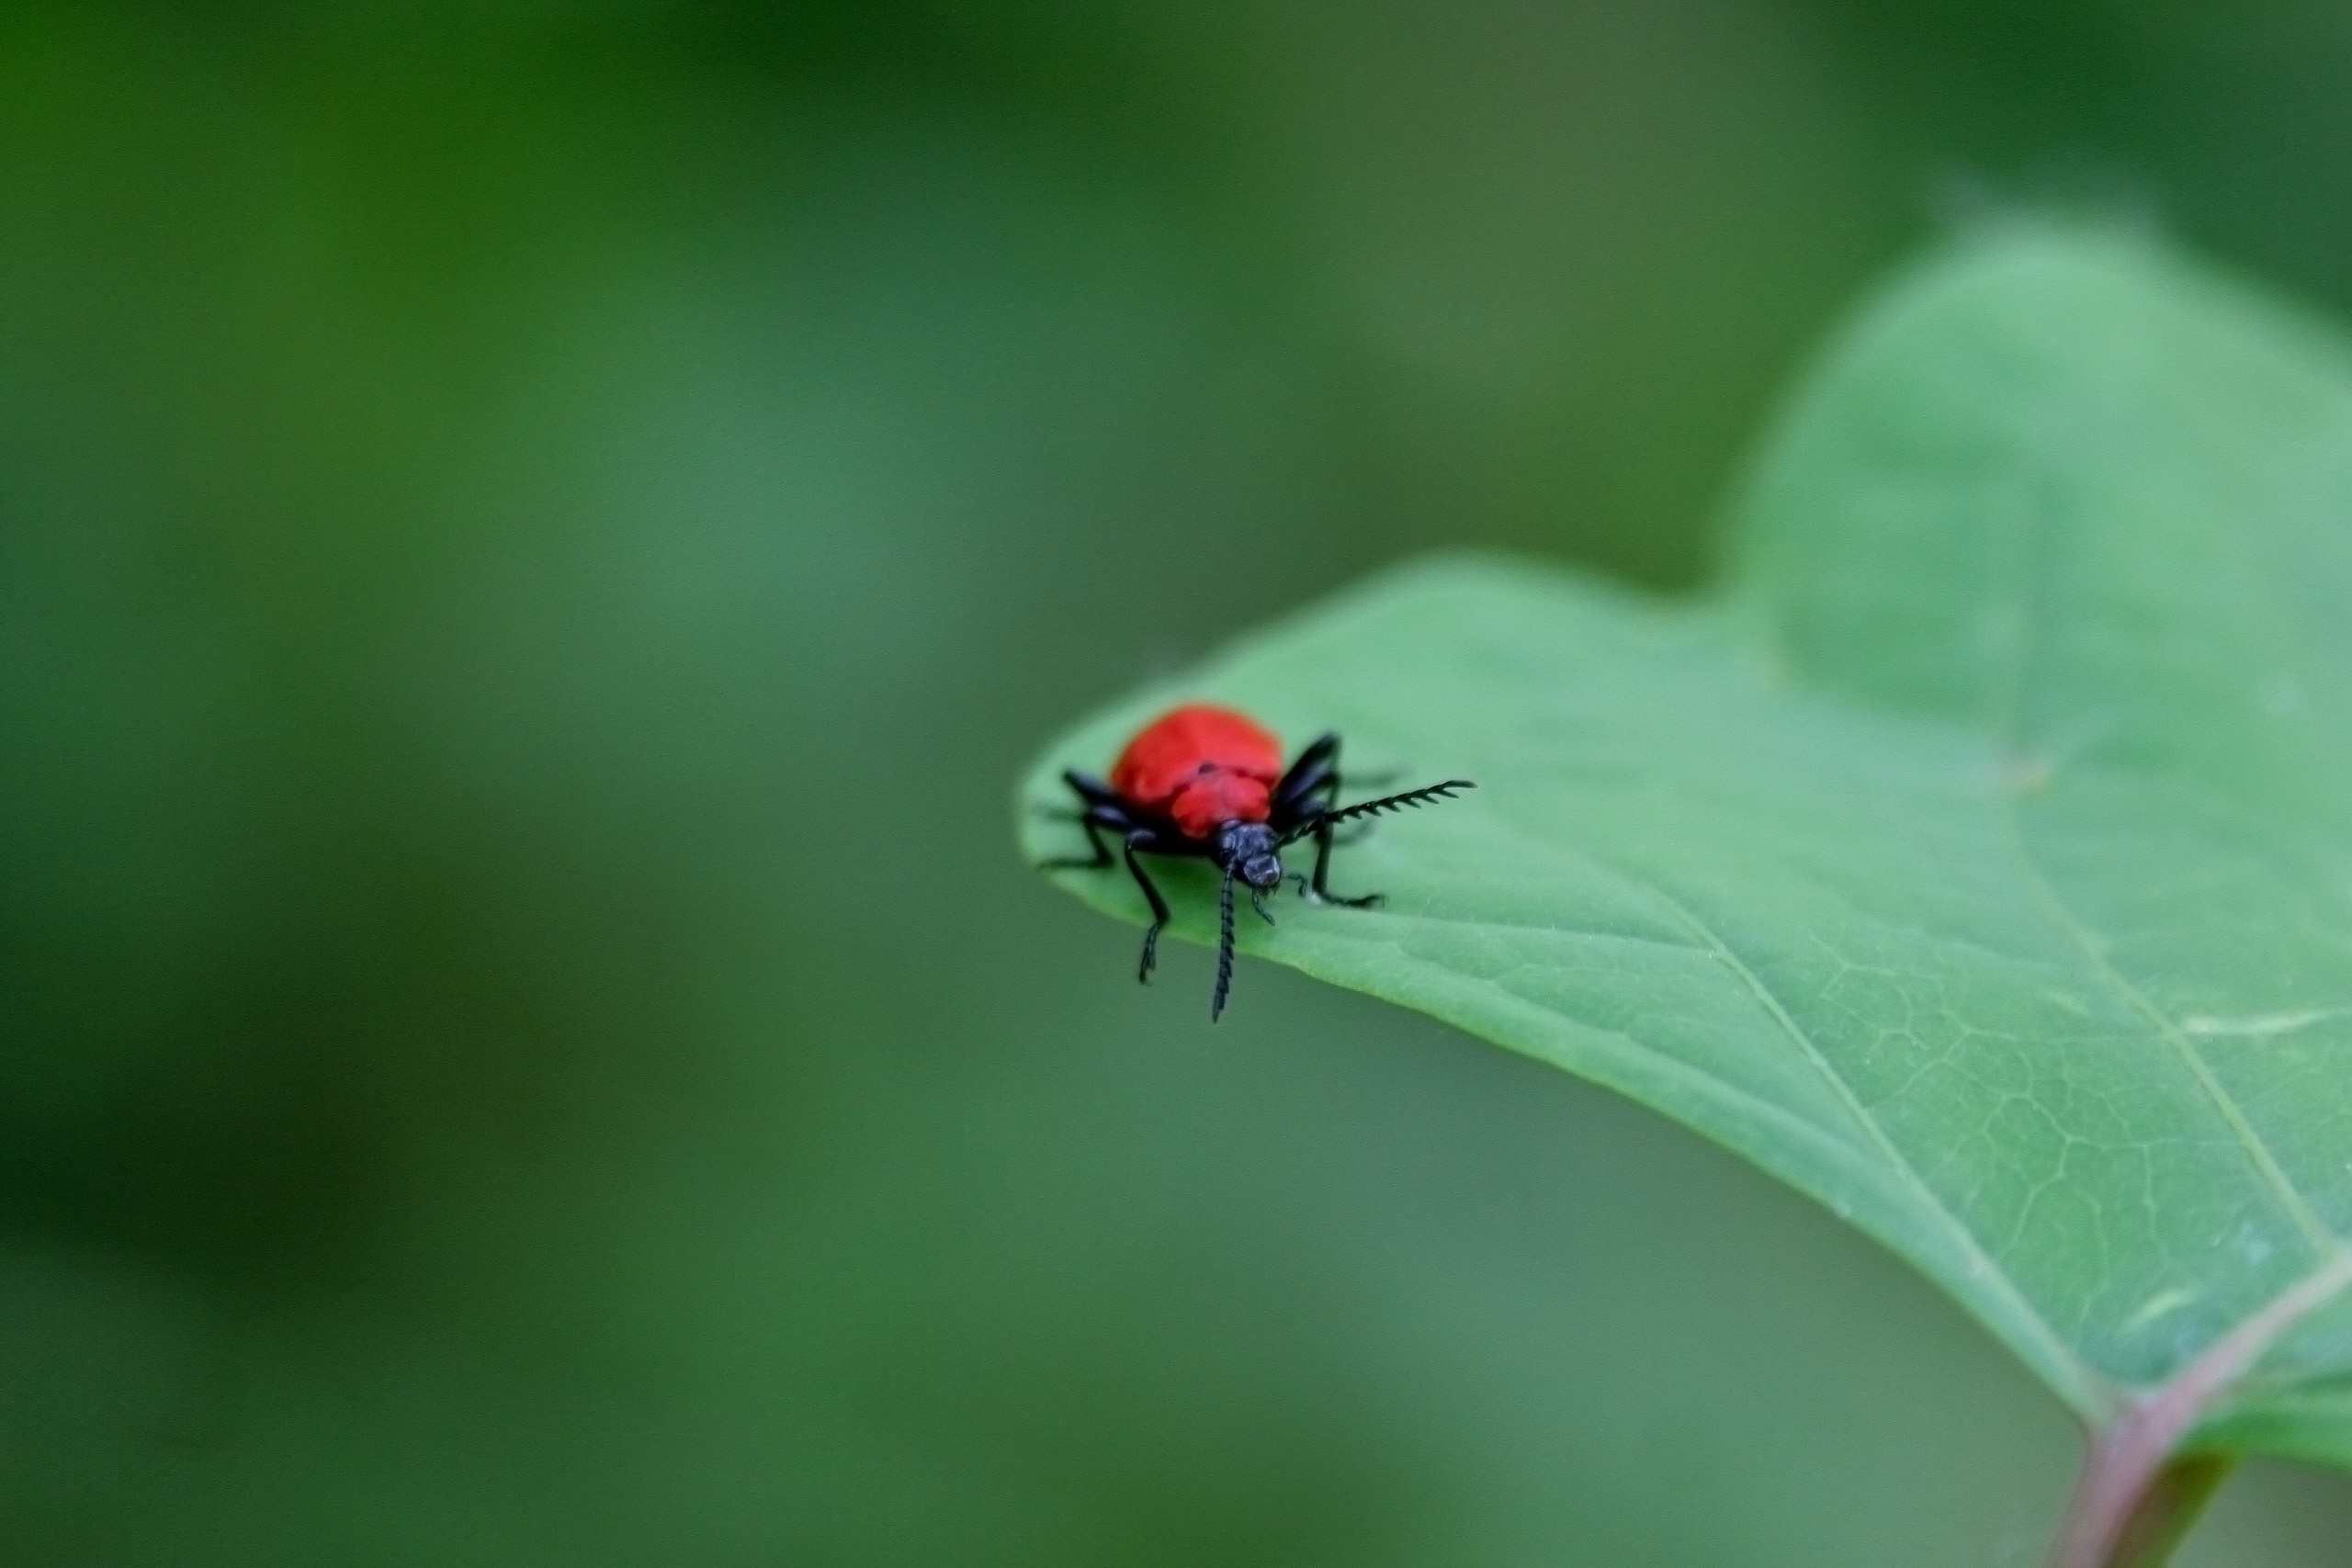 A Red Bug on Leaf